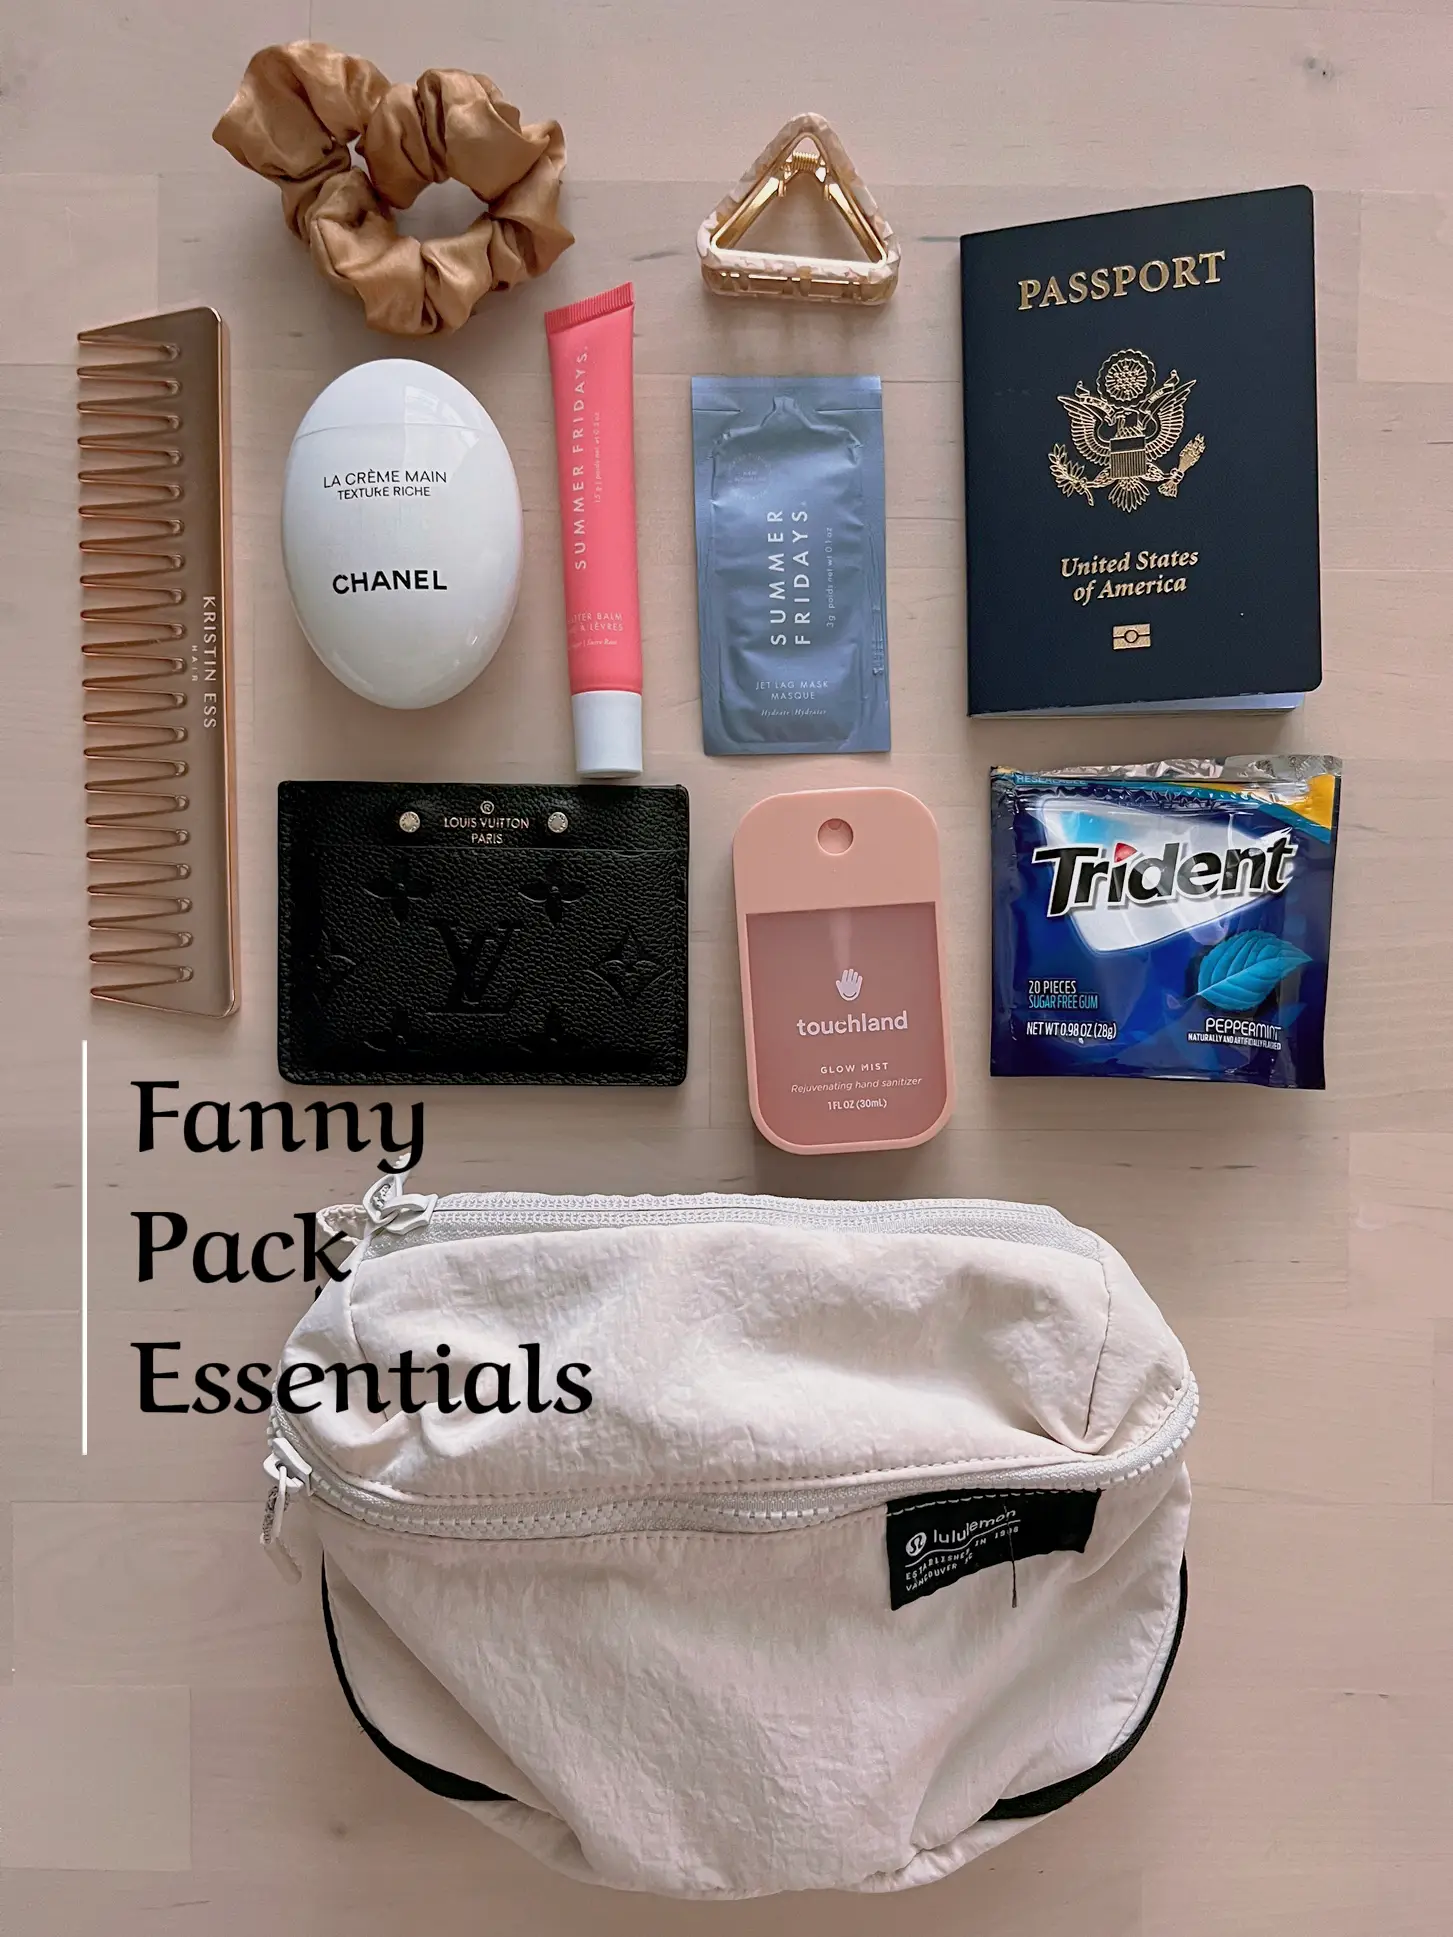 Travel essentials checklist - Lemon8 Search